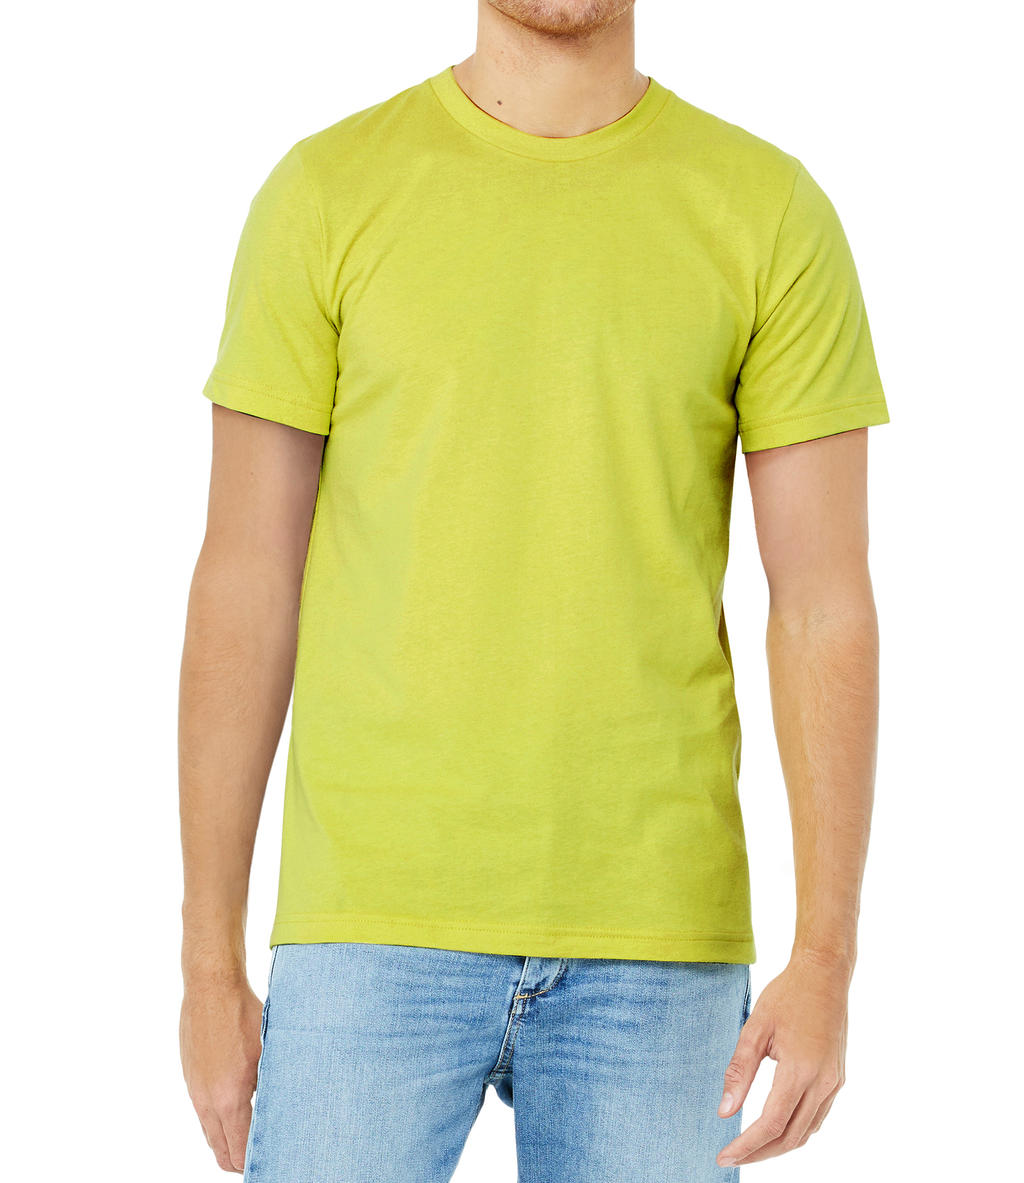 Tričko Bella Jersey - žluté-zelené, XS